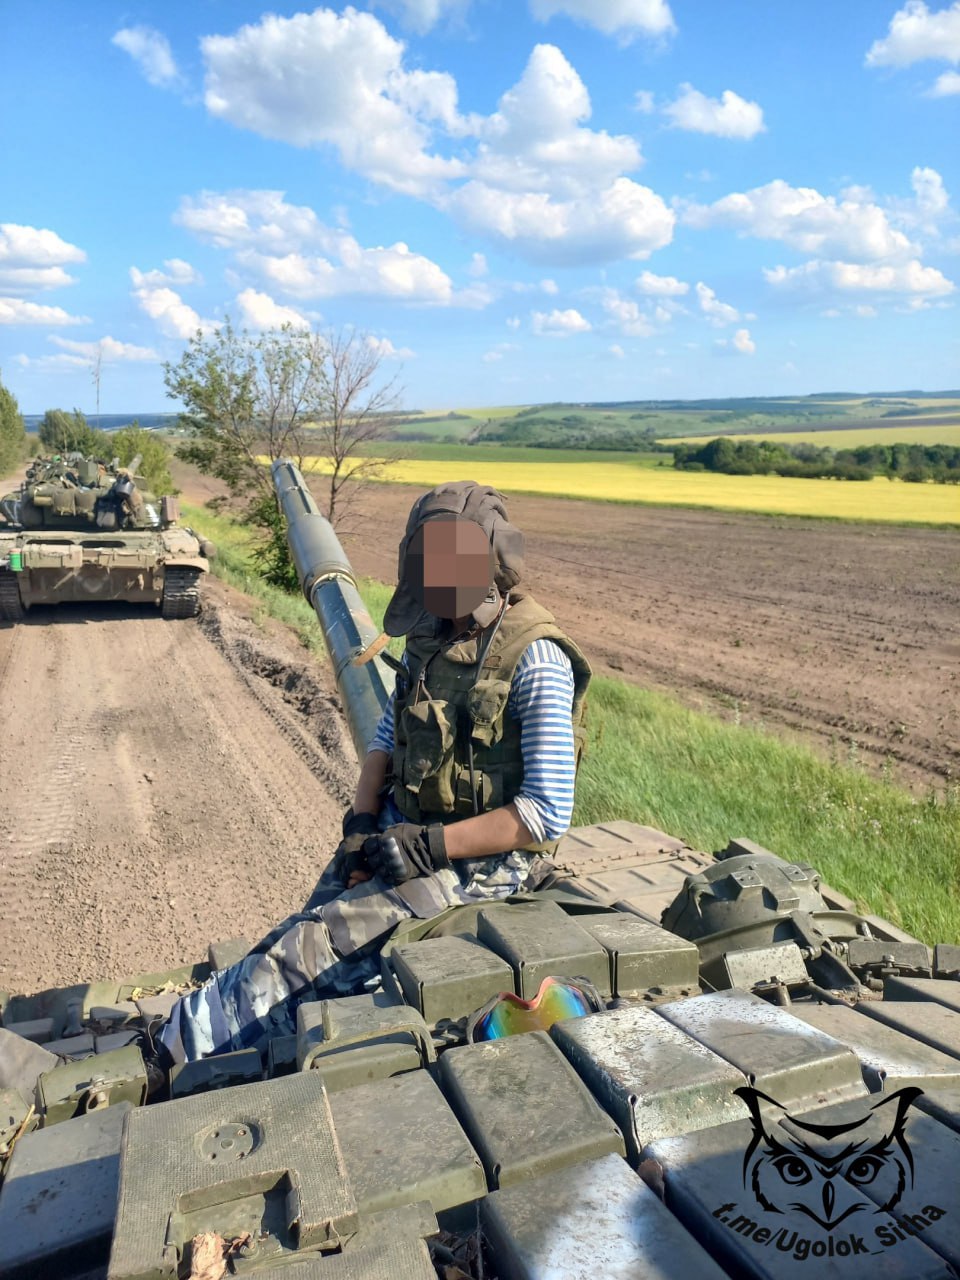 Lostarmour. Лостармор. Украинское наступление фото. Уголки на фотографии военные.